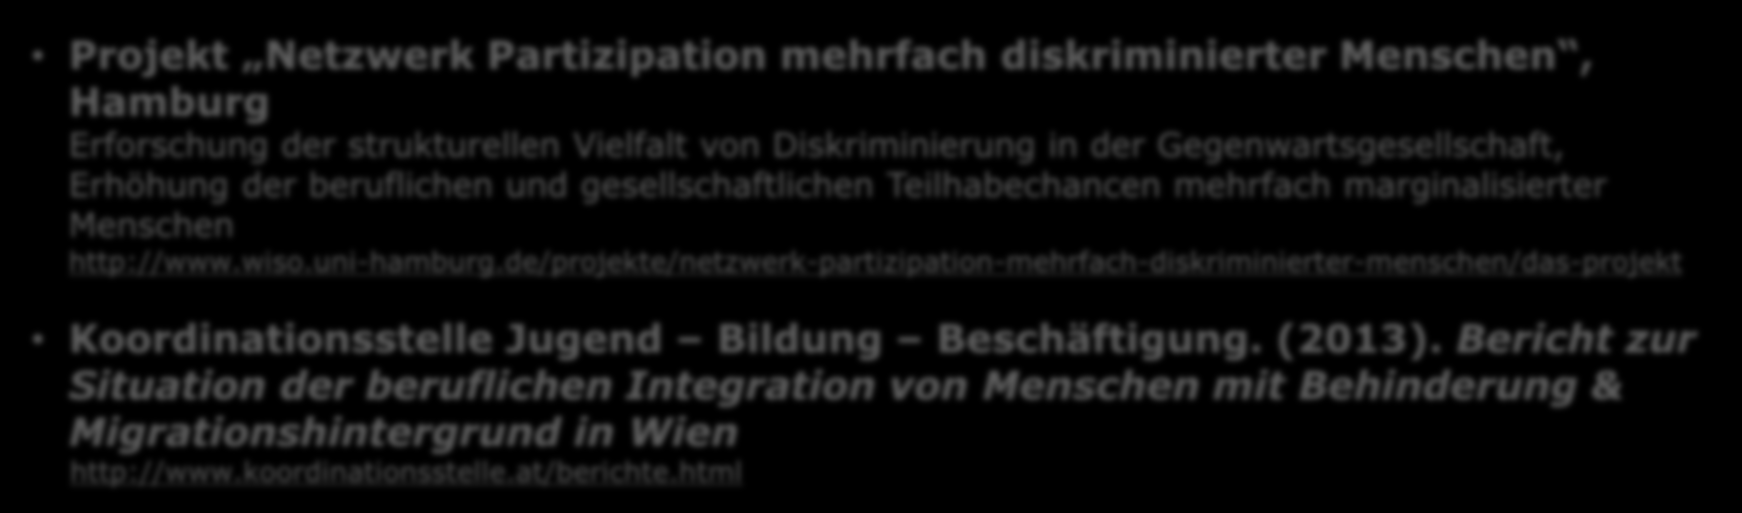 Behinderung und Migration Projekte und Materialien zum Thema Projekt Netzwerk Partizipation mehrfach diskriminierter Menschen, Hamburg Erforschung der strukturellen Vielfalt von Diskriminierung in